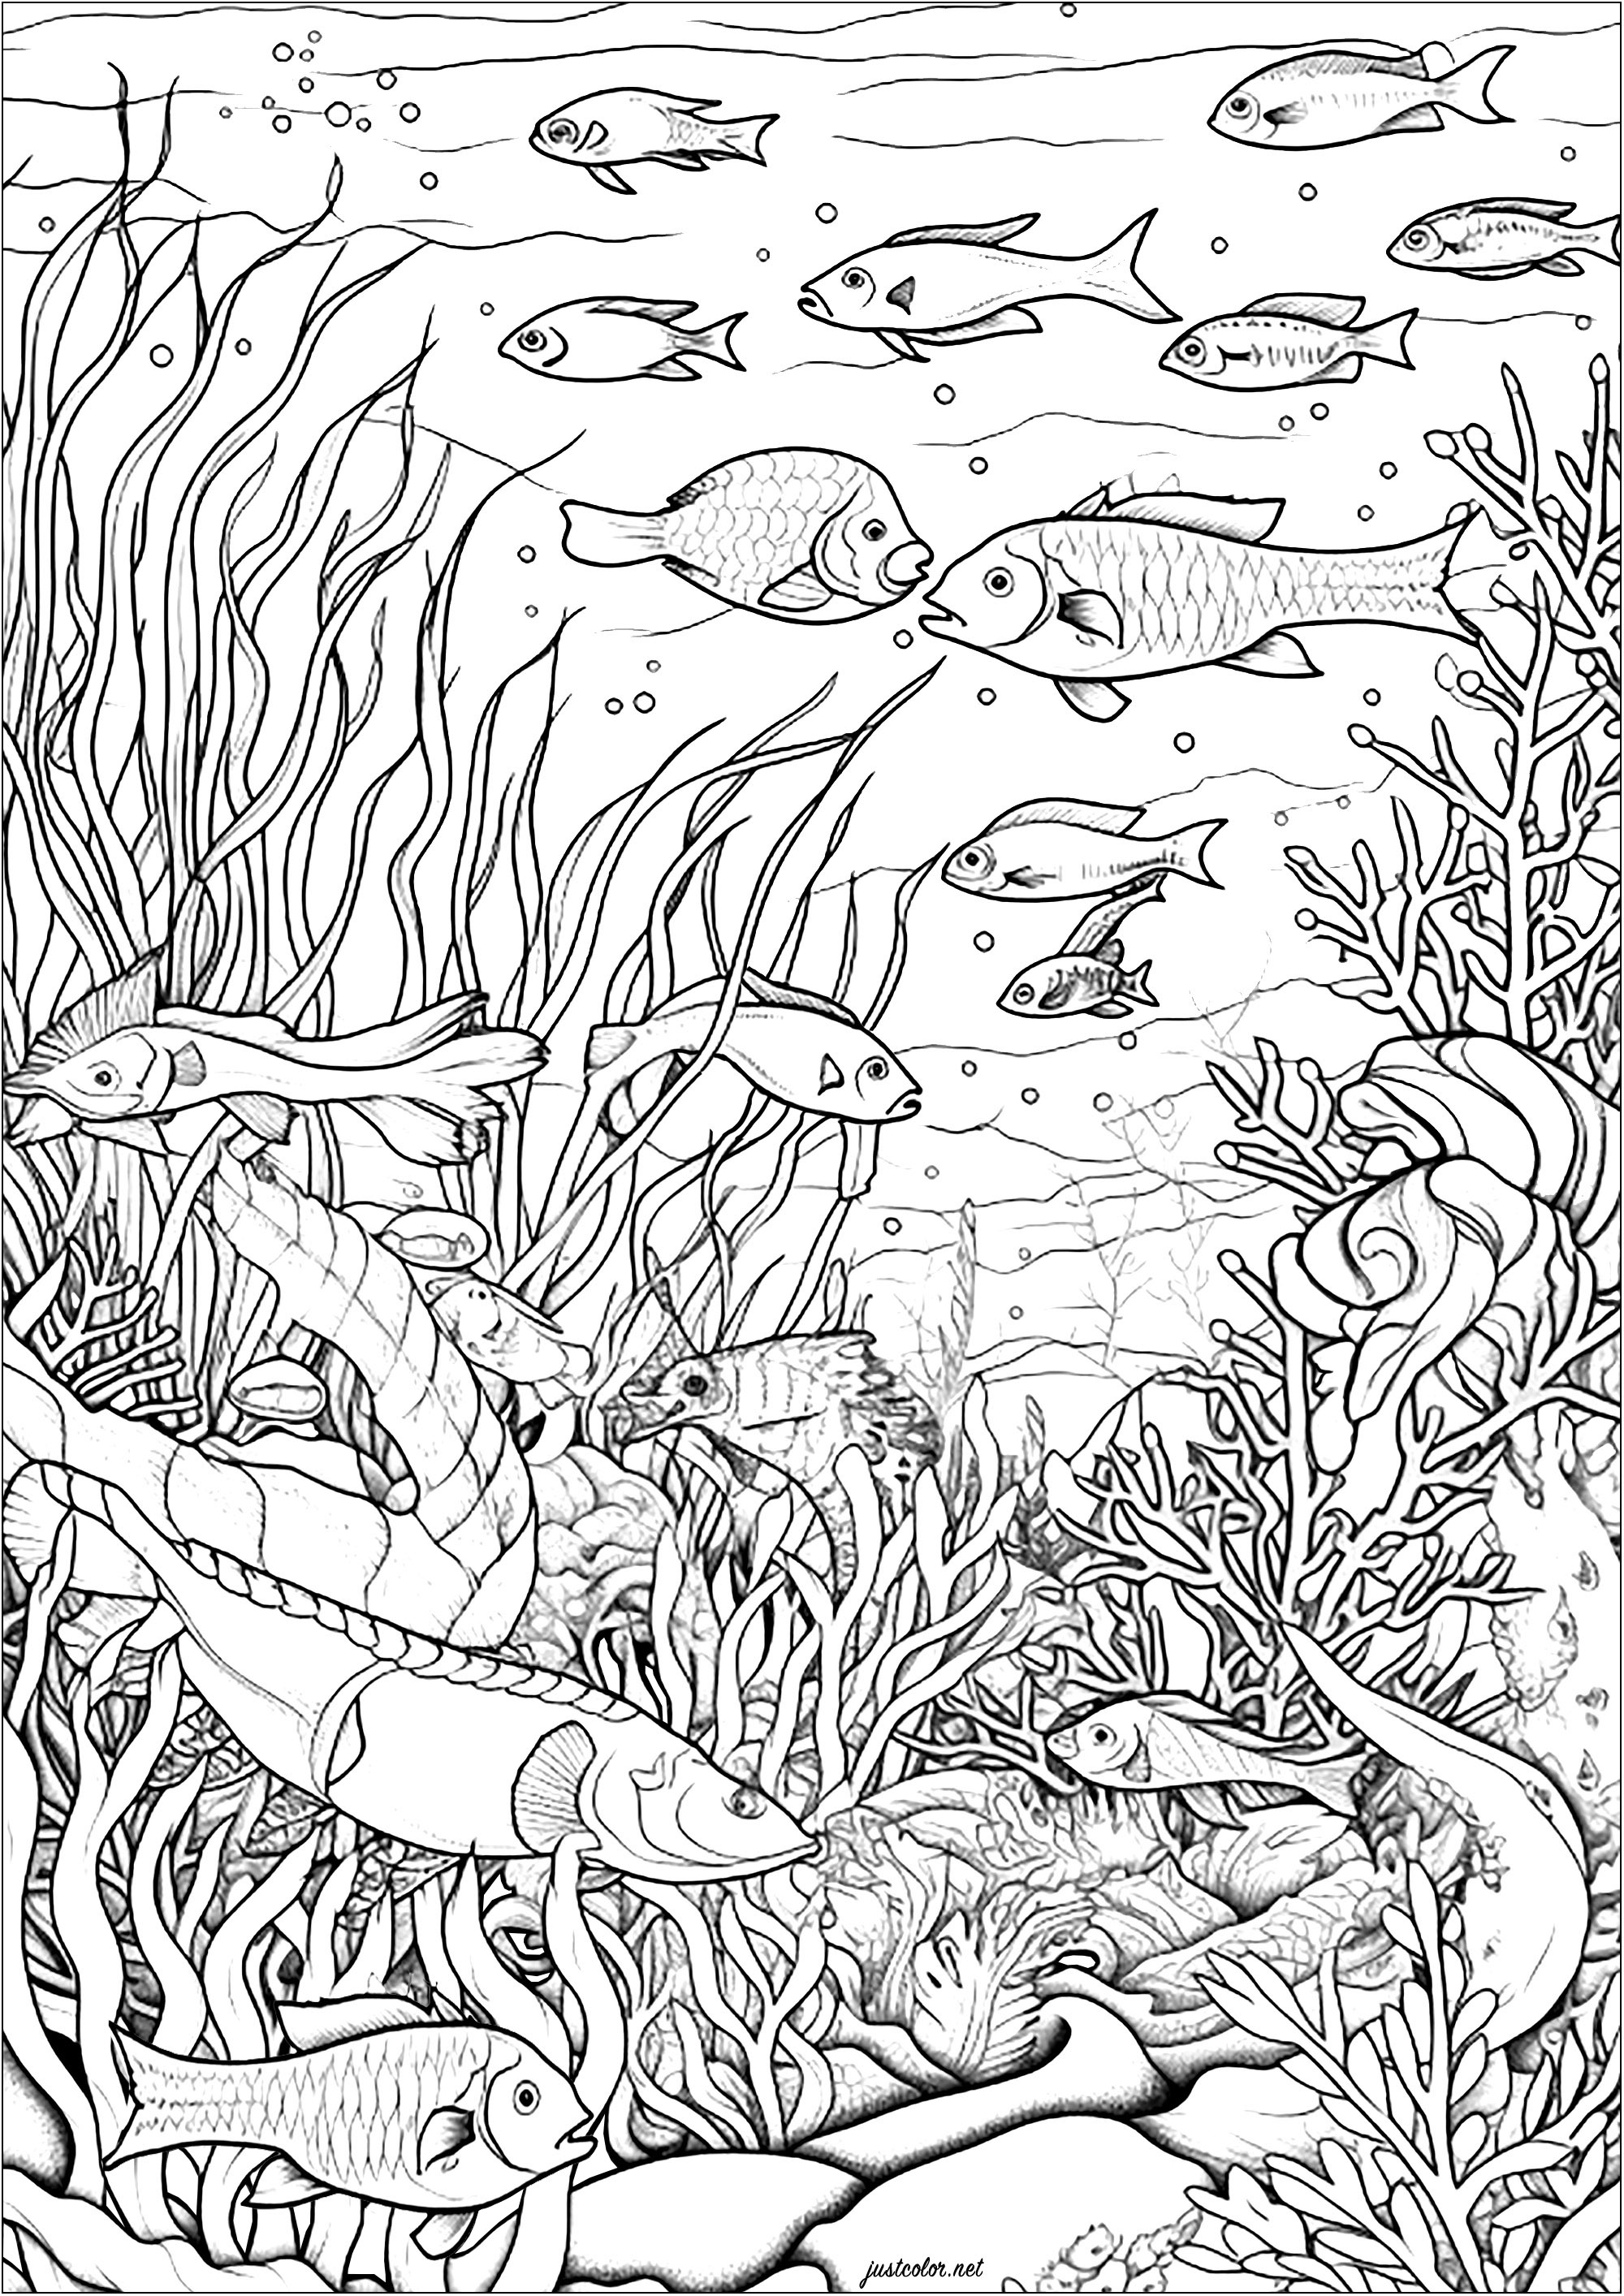 Peixe e algas marinhas. Esta página para colorir é uma maravilhosa pintura aquática.Representa uma cena subaquática serena e relaxante.Podes ver muitos peixes a nadar no fundo do mar cheio de algas.